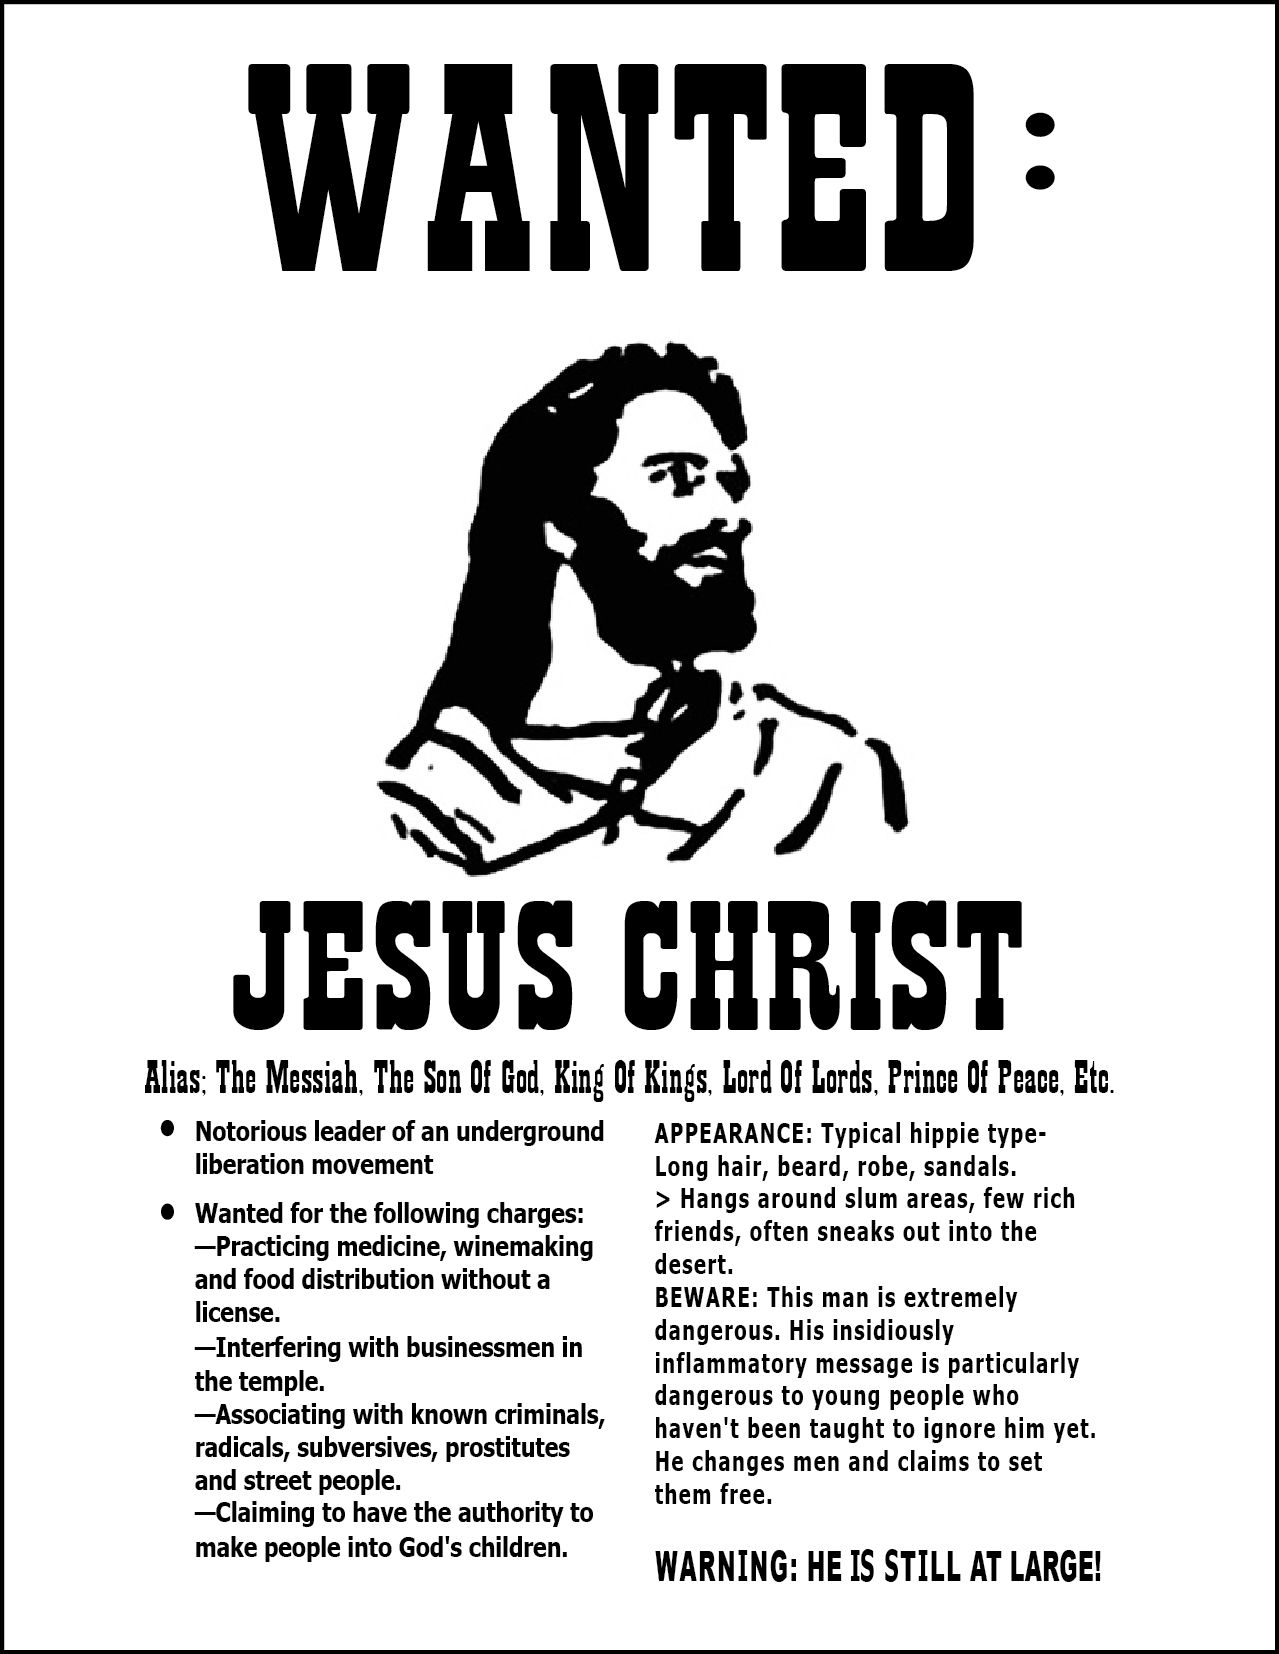 The people's movement. Wanted Иисус. Движение Jesus people. Постер Иисус. Jesus people Movement.